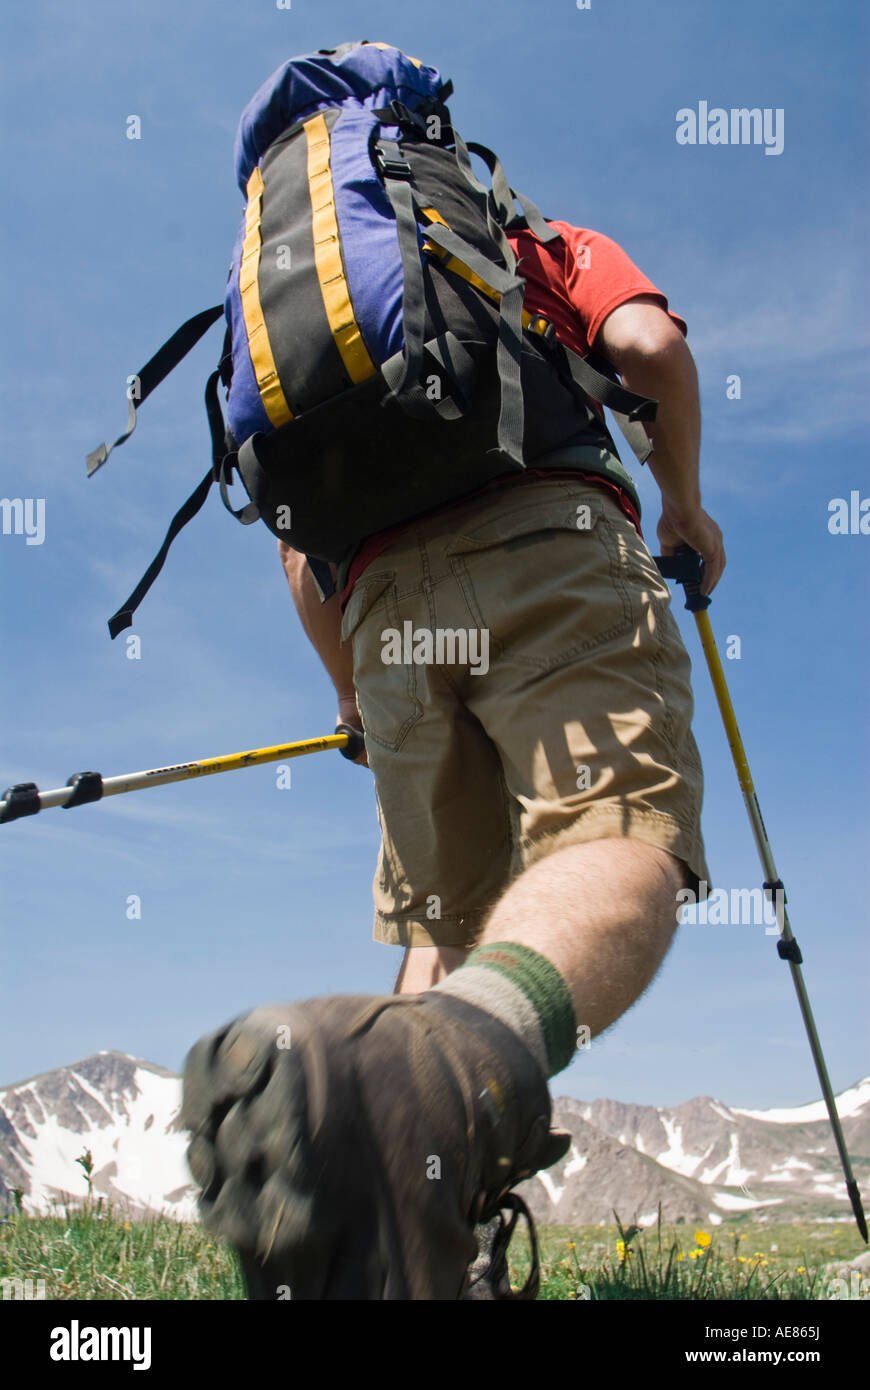 Libre d'un homme avec un sac à dos de randonnée en montagne Banque D'Images